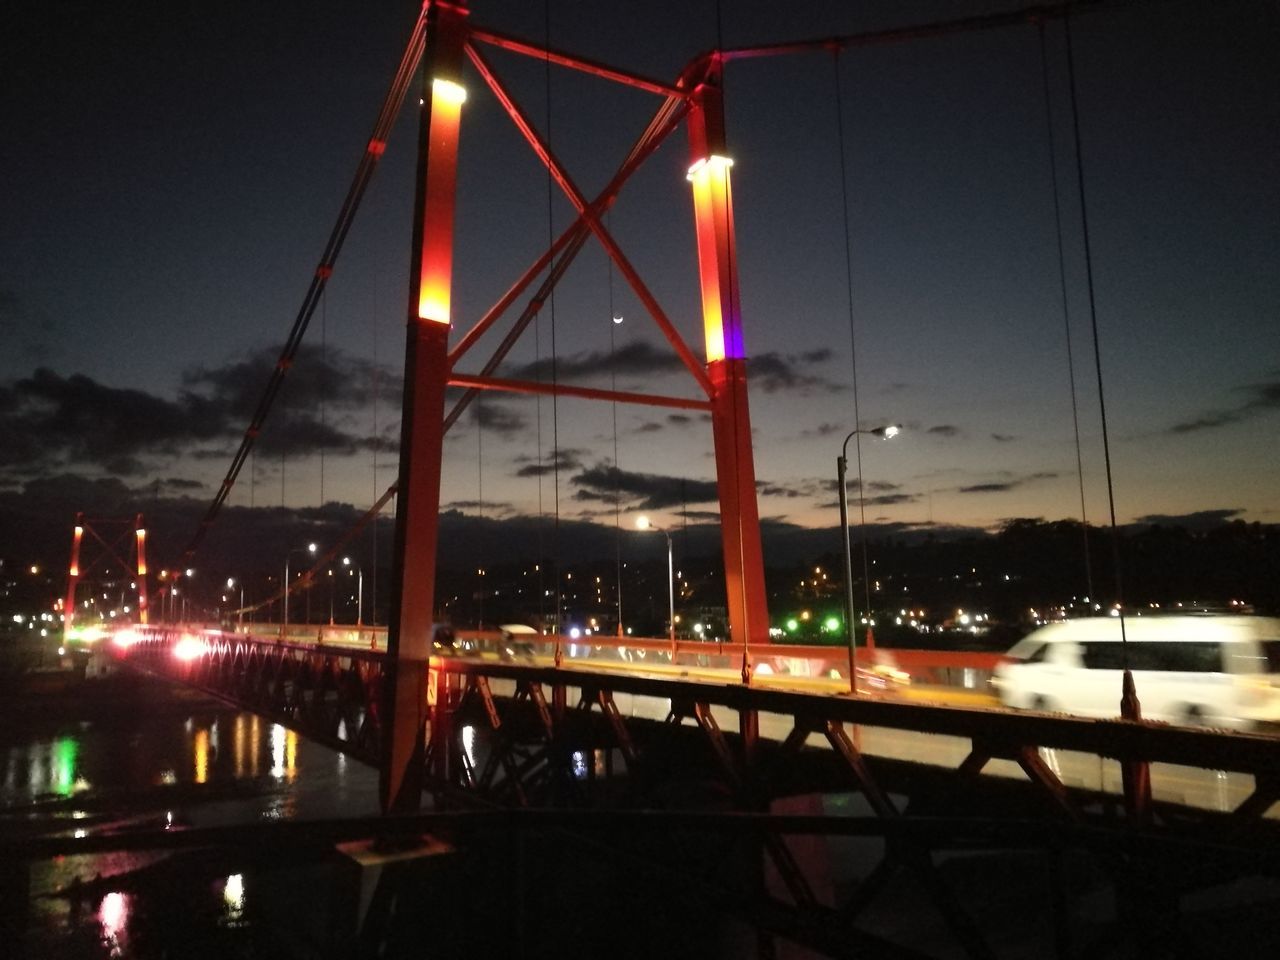 VIEW OF ILLUMINATED BRIDGE AT NIGHT